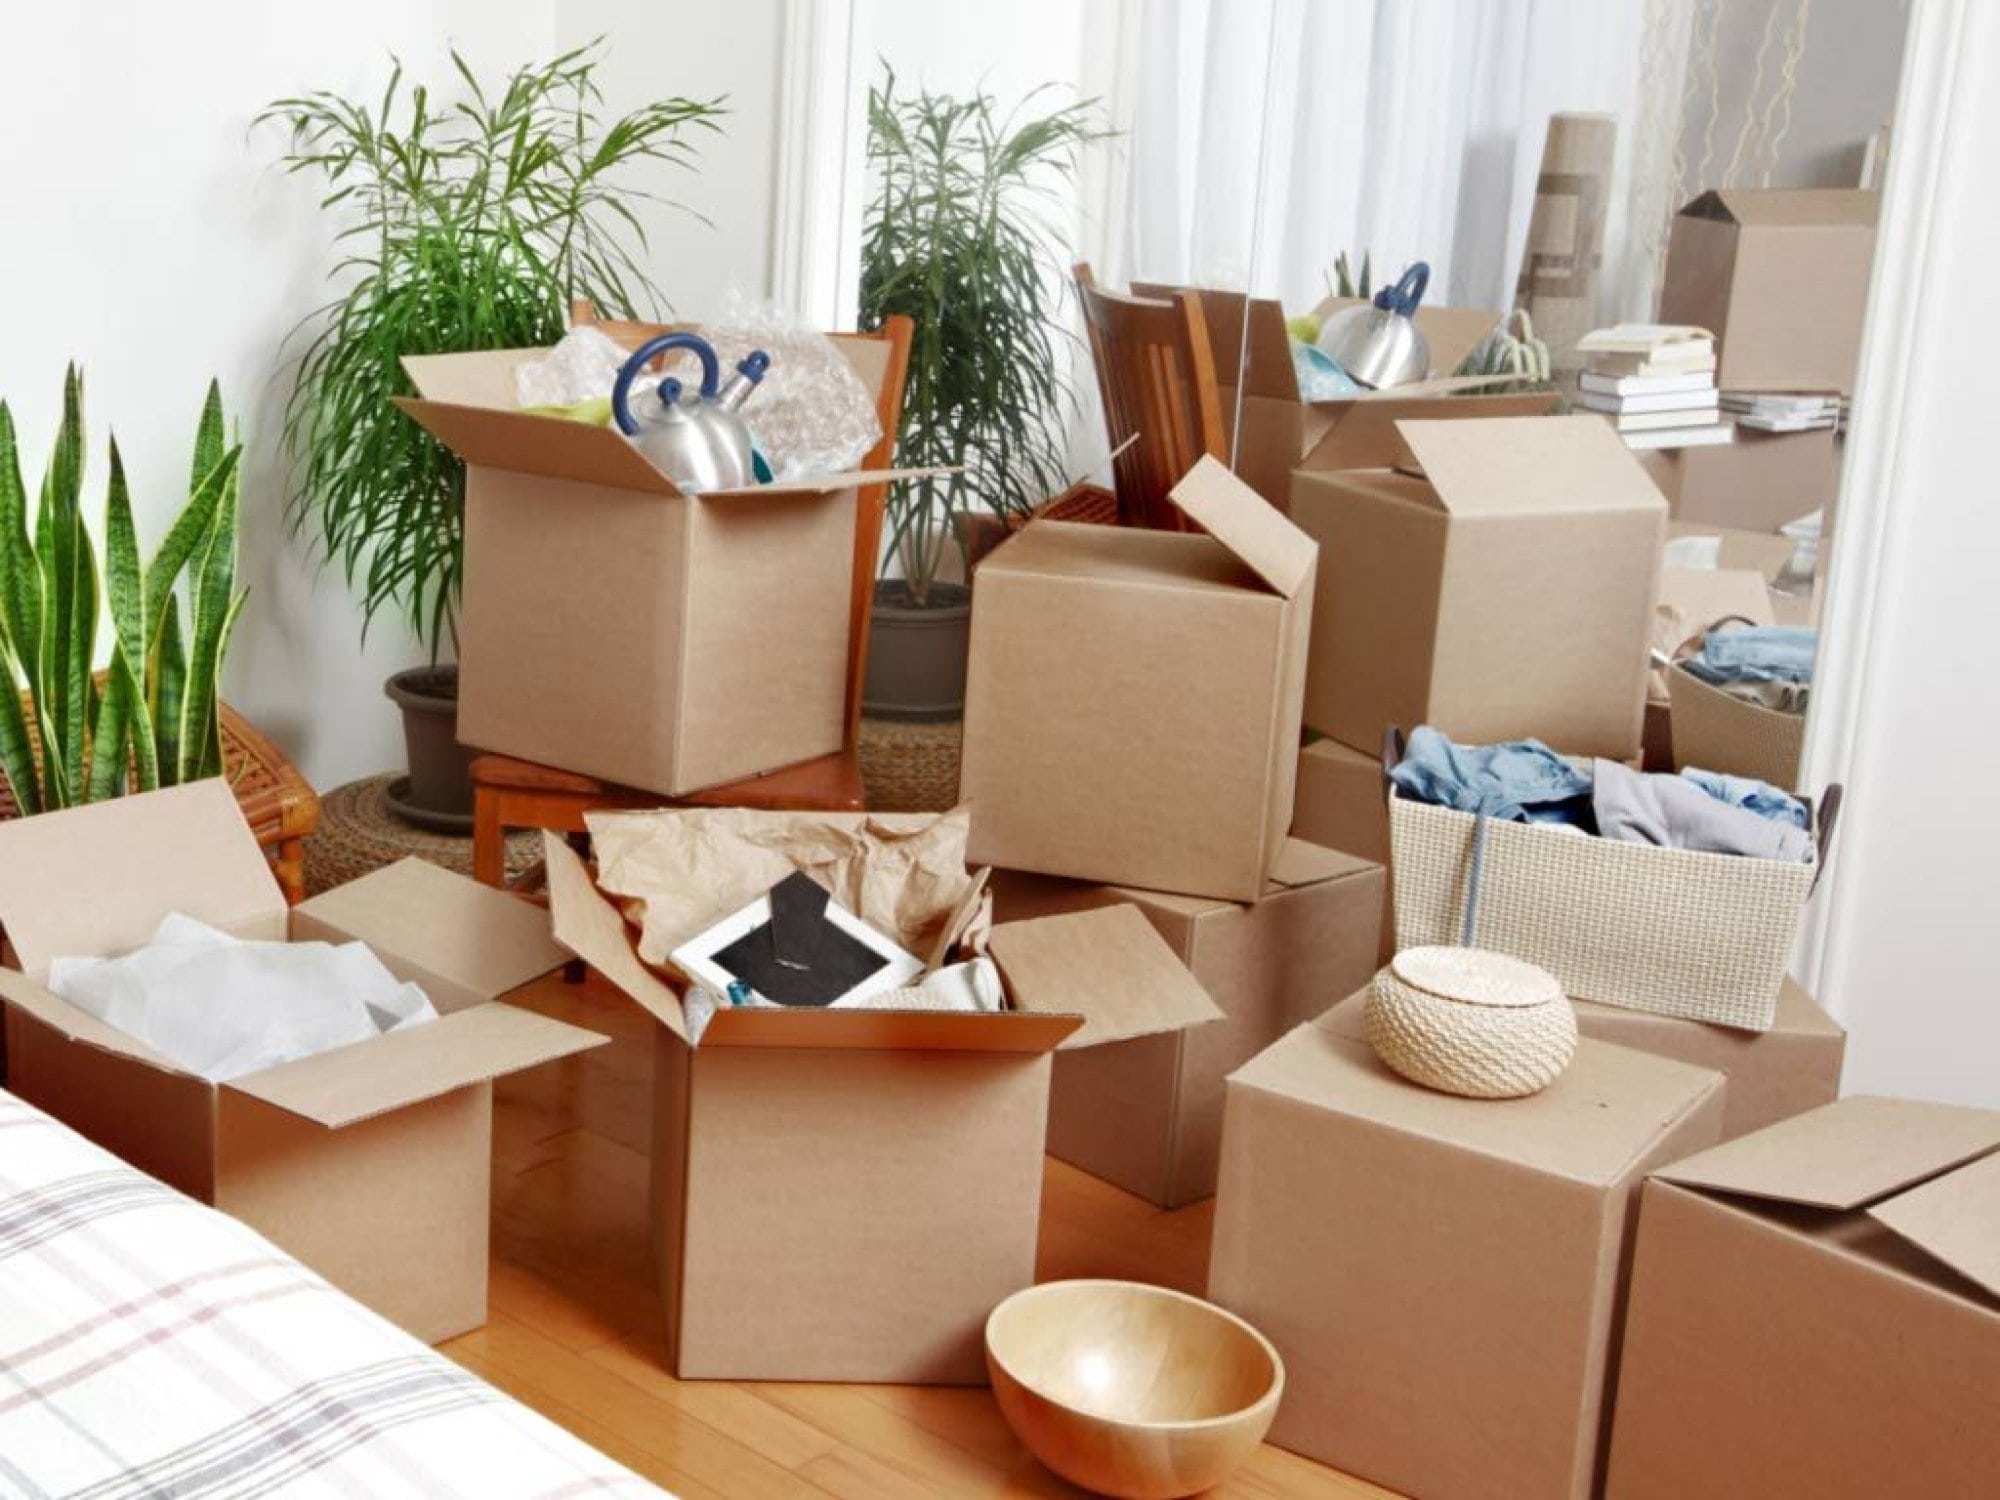 Переезд маркет ру. Упаковка мебели. Коробки для упаковки вещей. Коробки в квартире. Упаковка вещей для переезда.